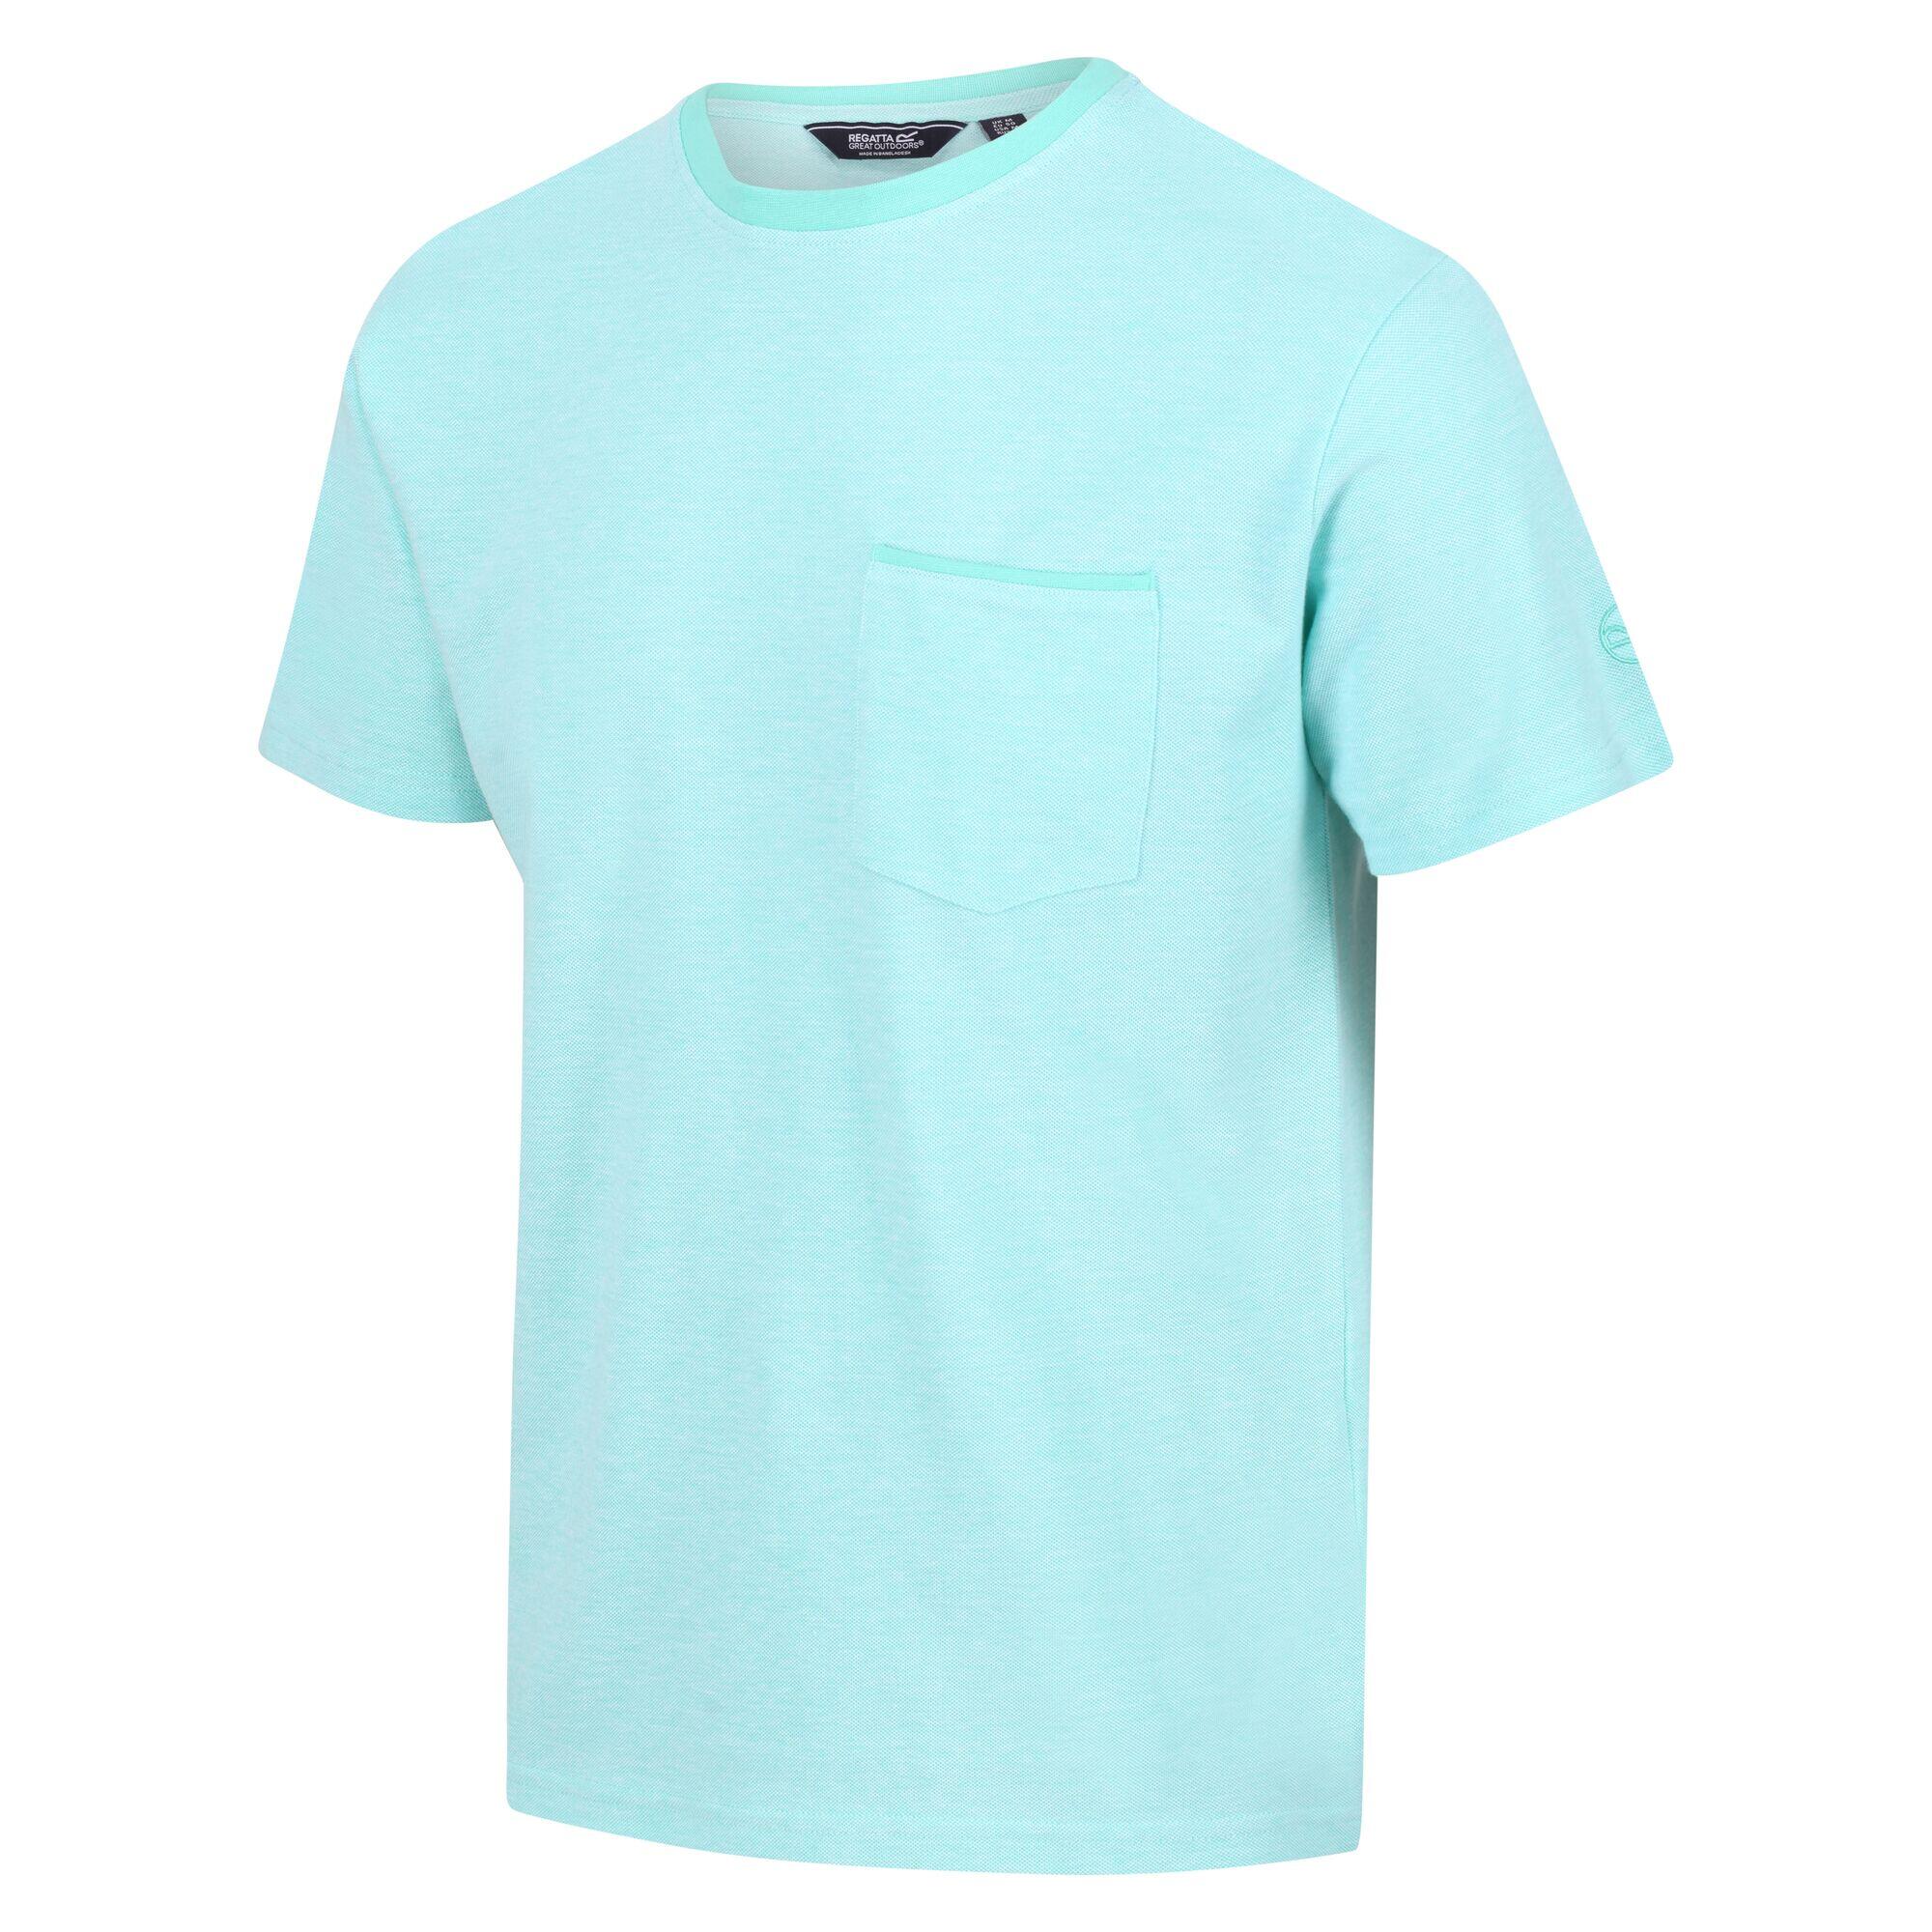 Caelum Men's Walking Short Sleeve T-Shirt - Opal Blue 4/5